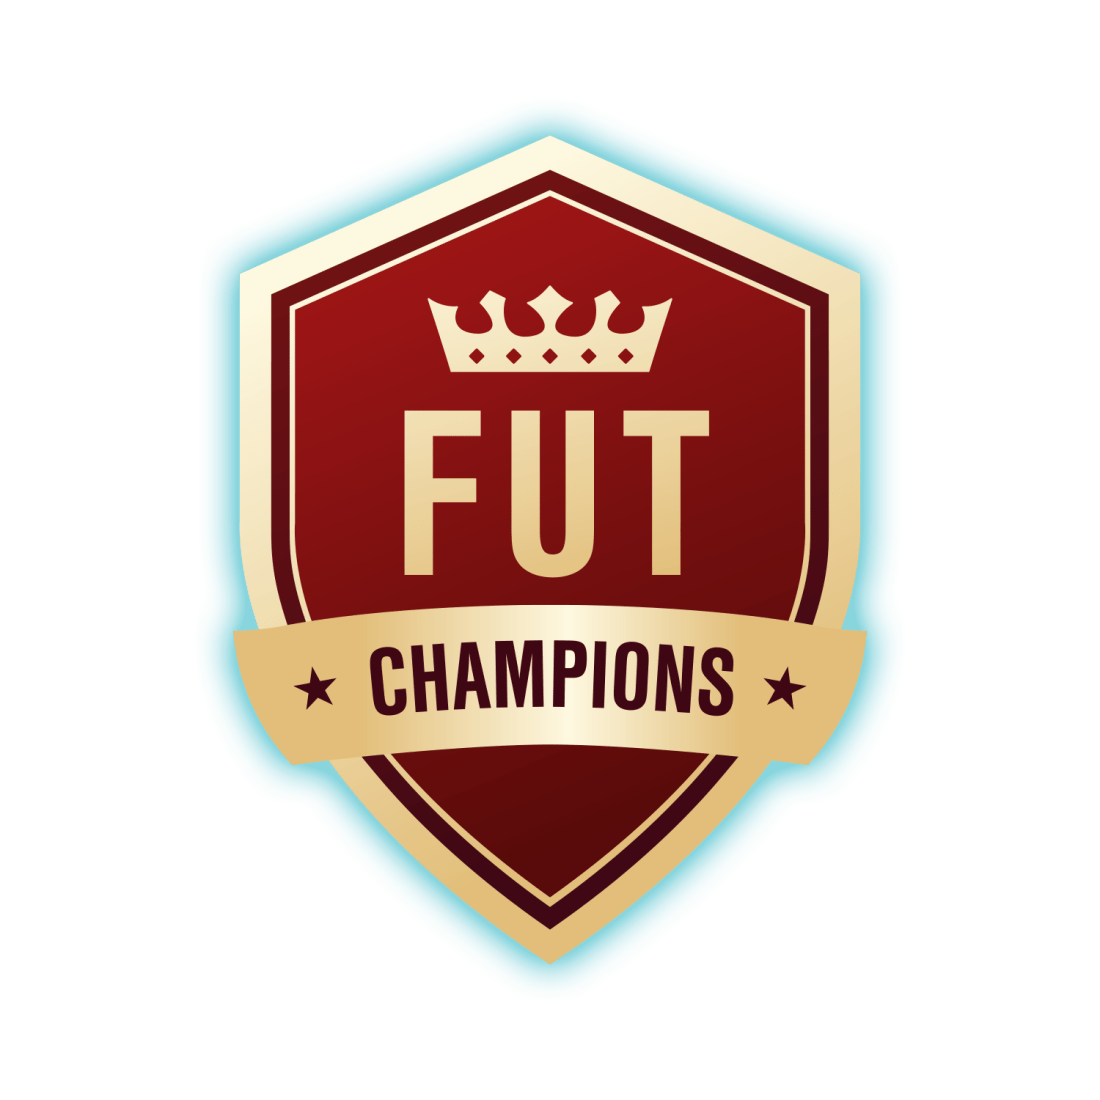 FIFA 23 FUT Champions rewards: How to qualify, playoffs, finals